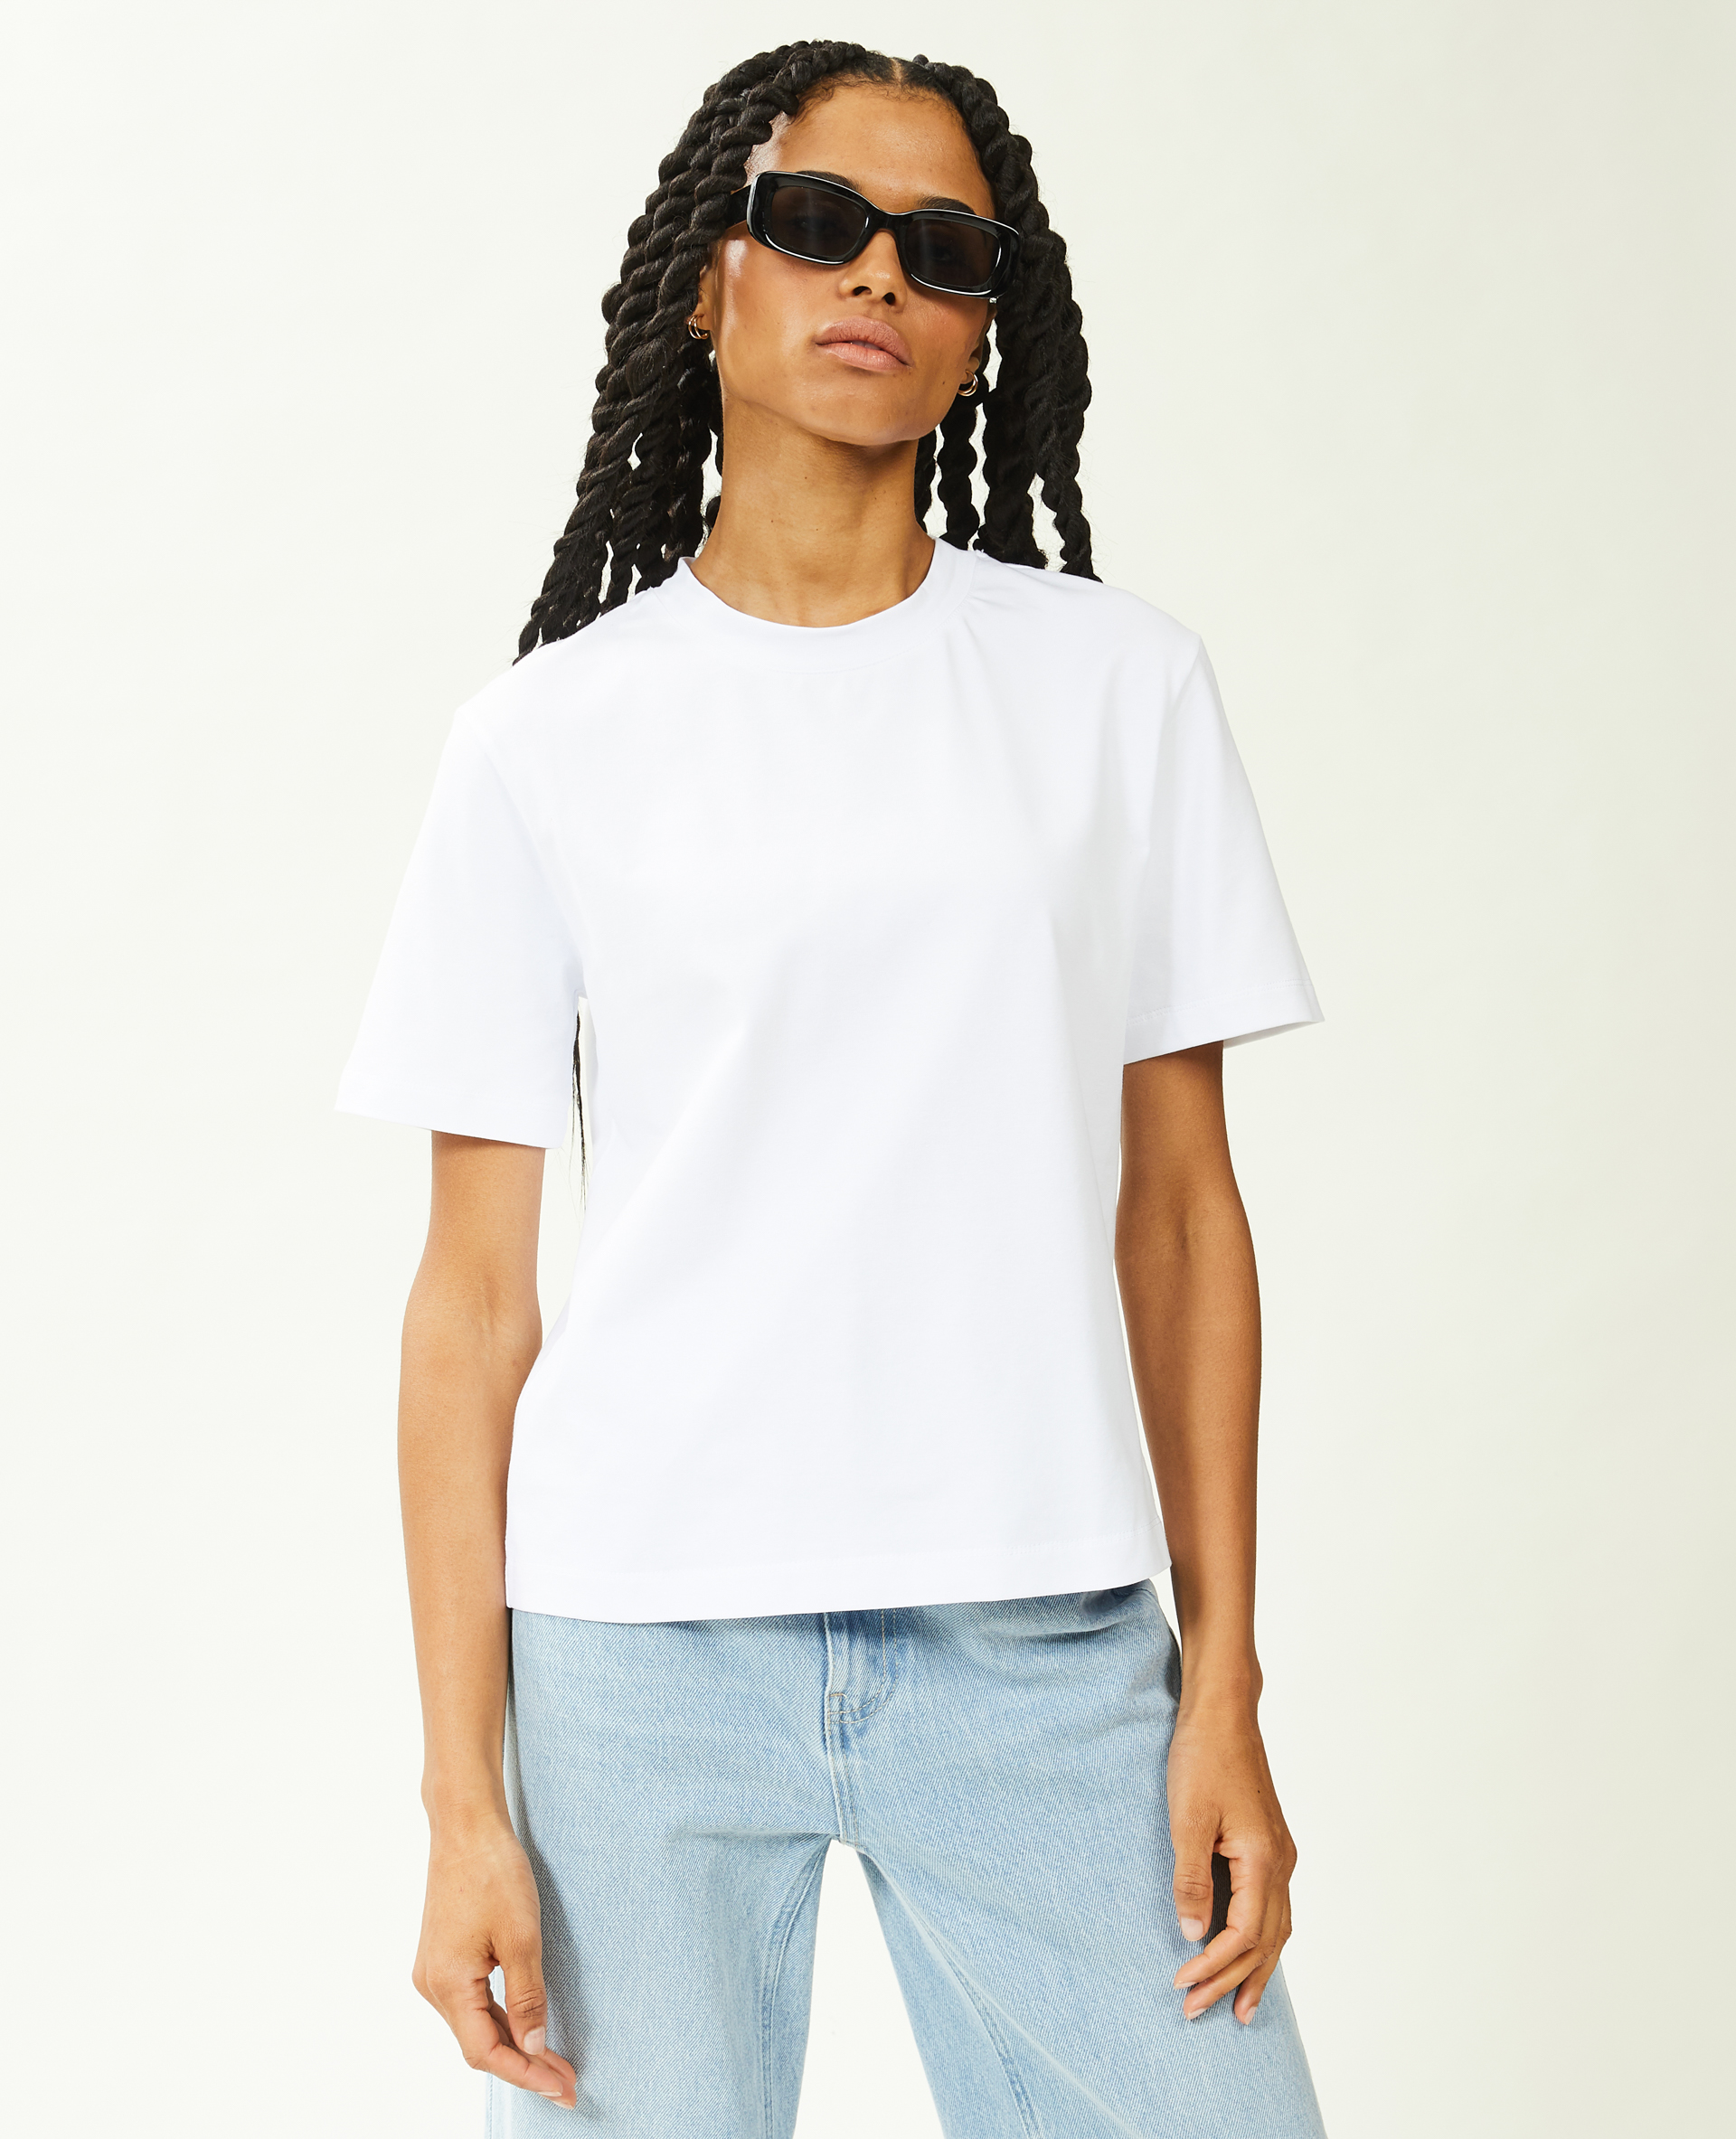 T-shirt manches courtes coton épais blanc - Pimkie